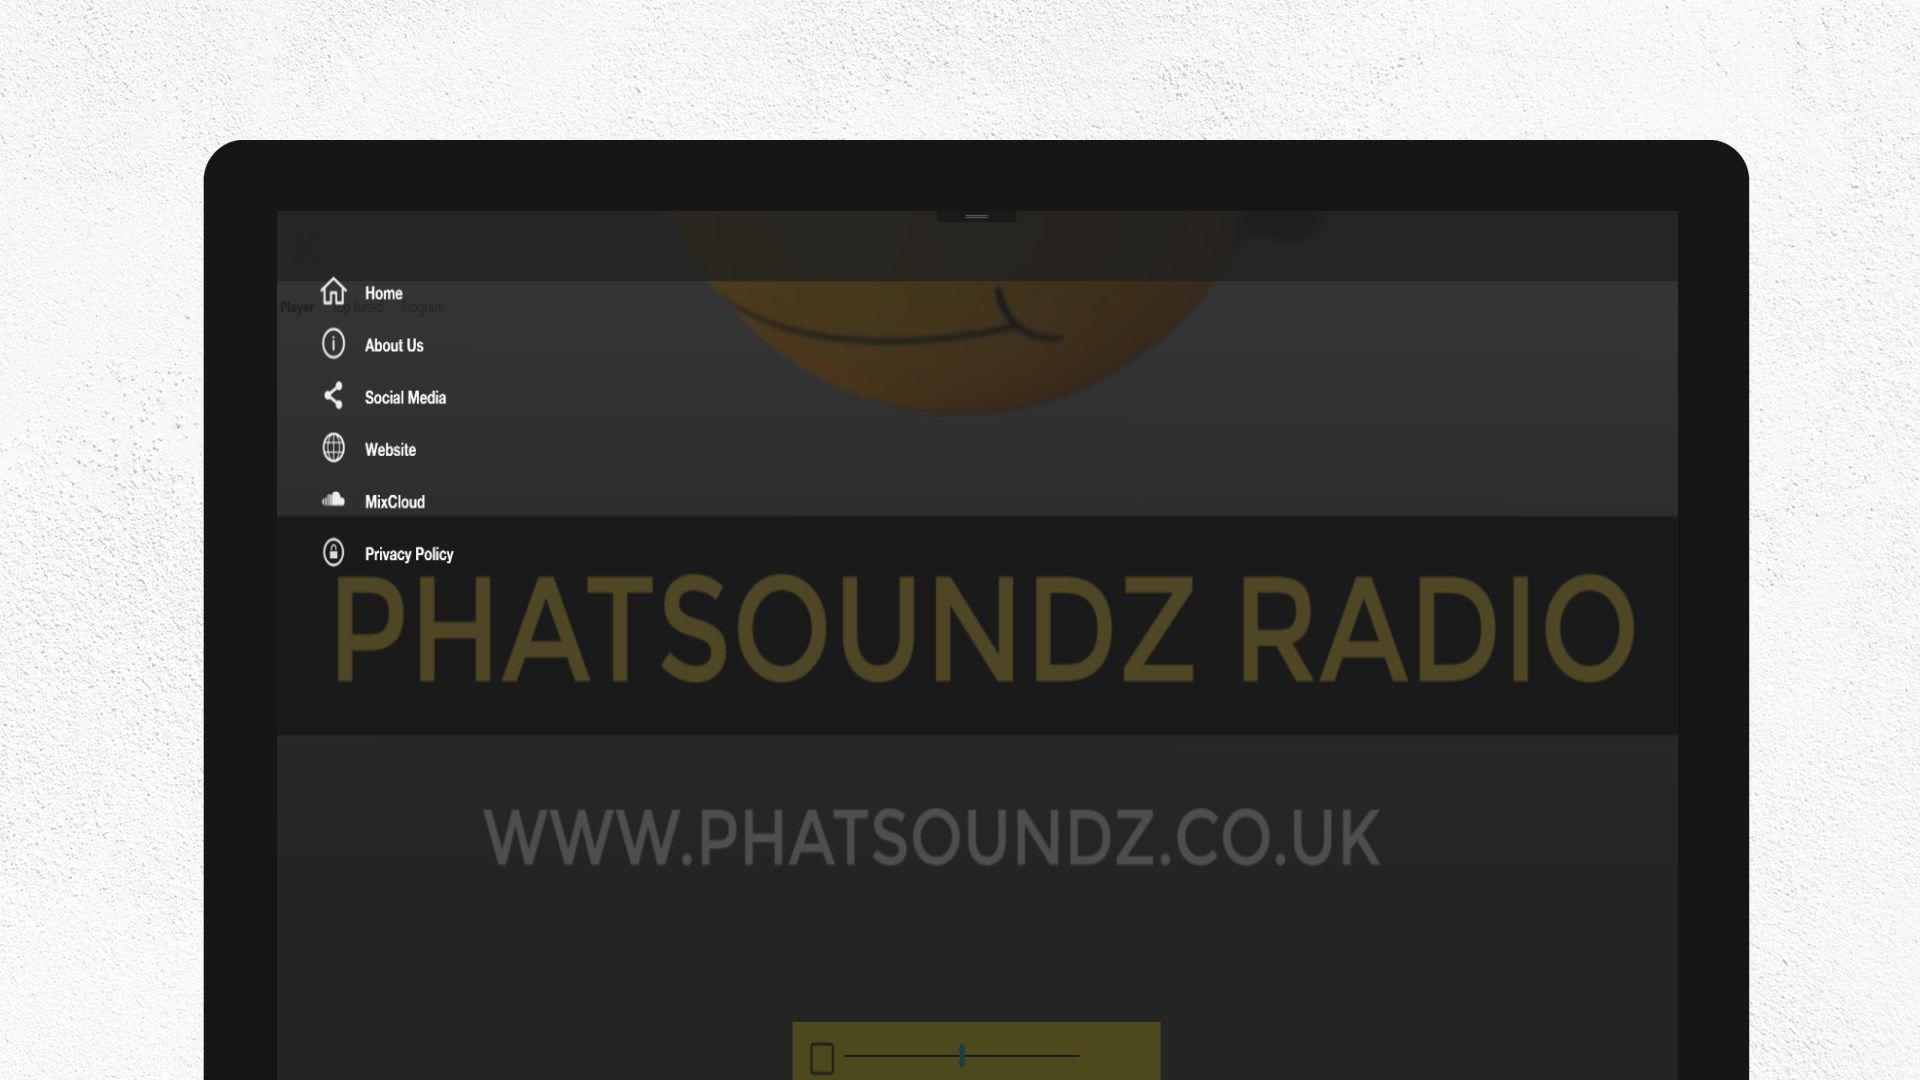 Phatsoundz Radio